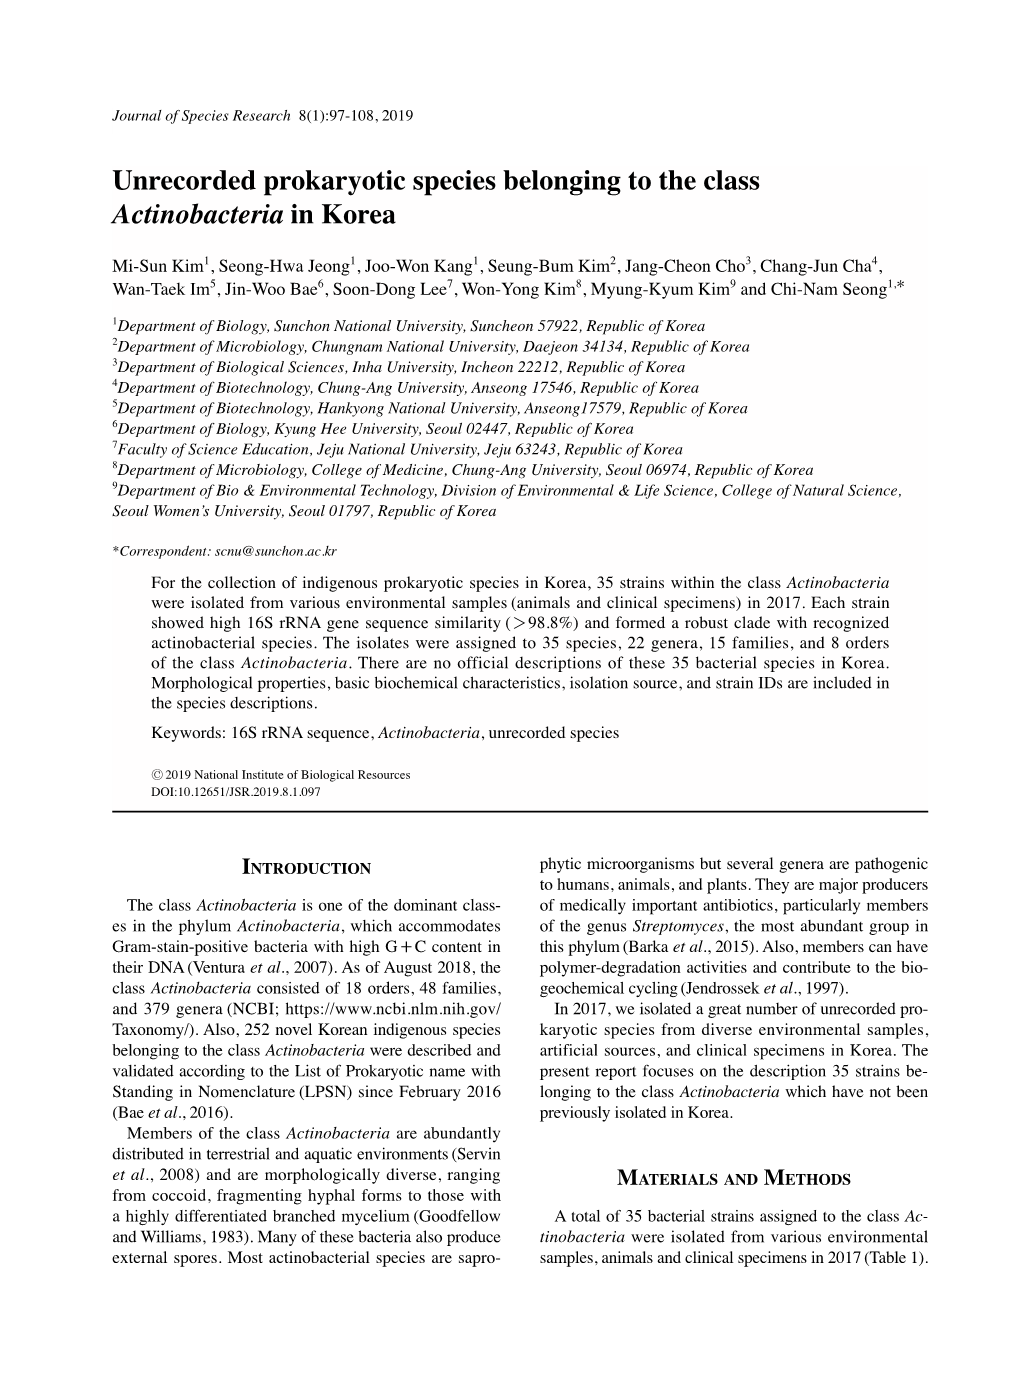 Unrecorded Prokaryotic Species Belonging to the Class Actinobacteria in Korea